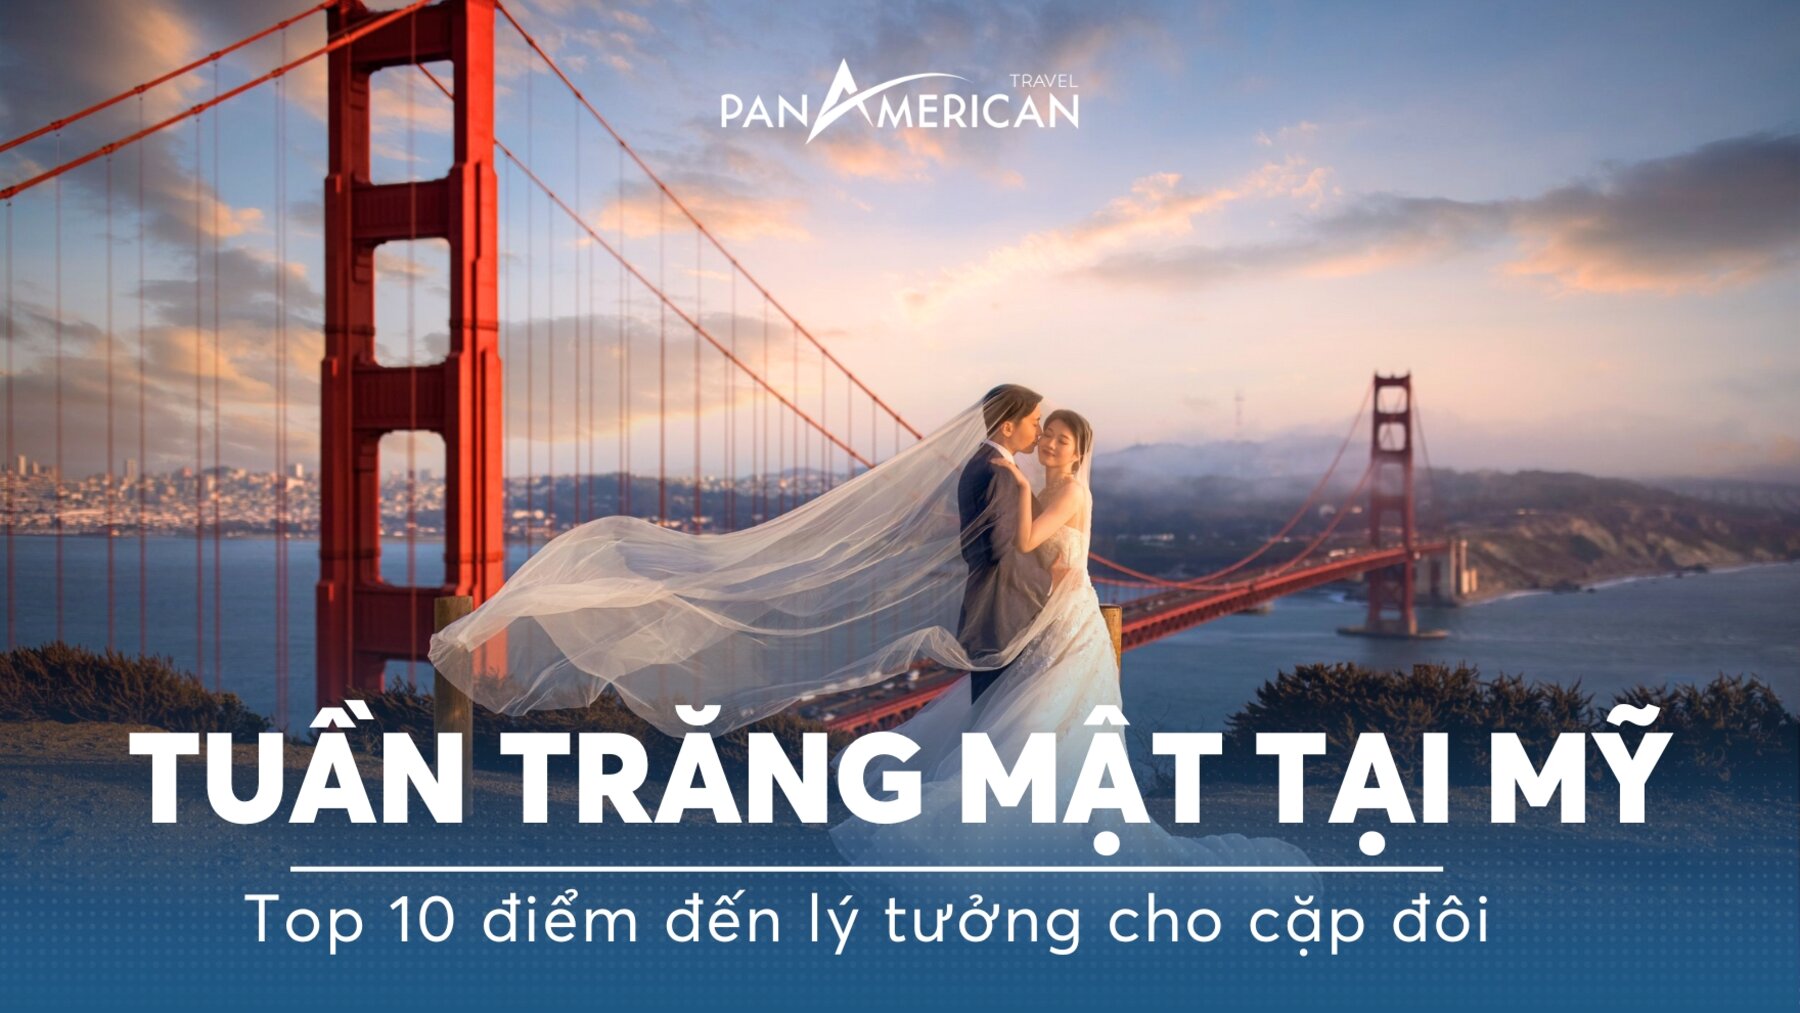 Top 10 điểm đến lý tưởng cho cặp đôi đi honeymoon tại Mỹ 